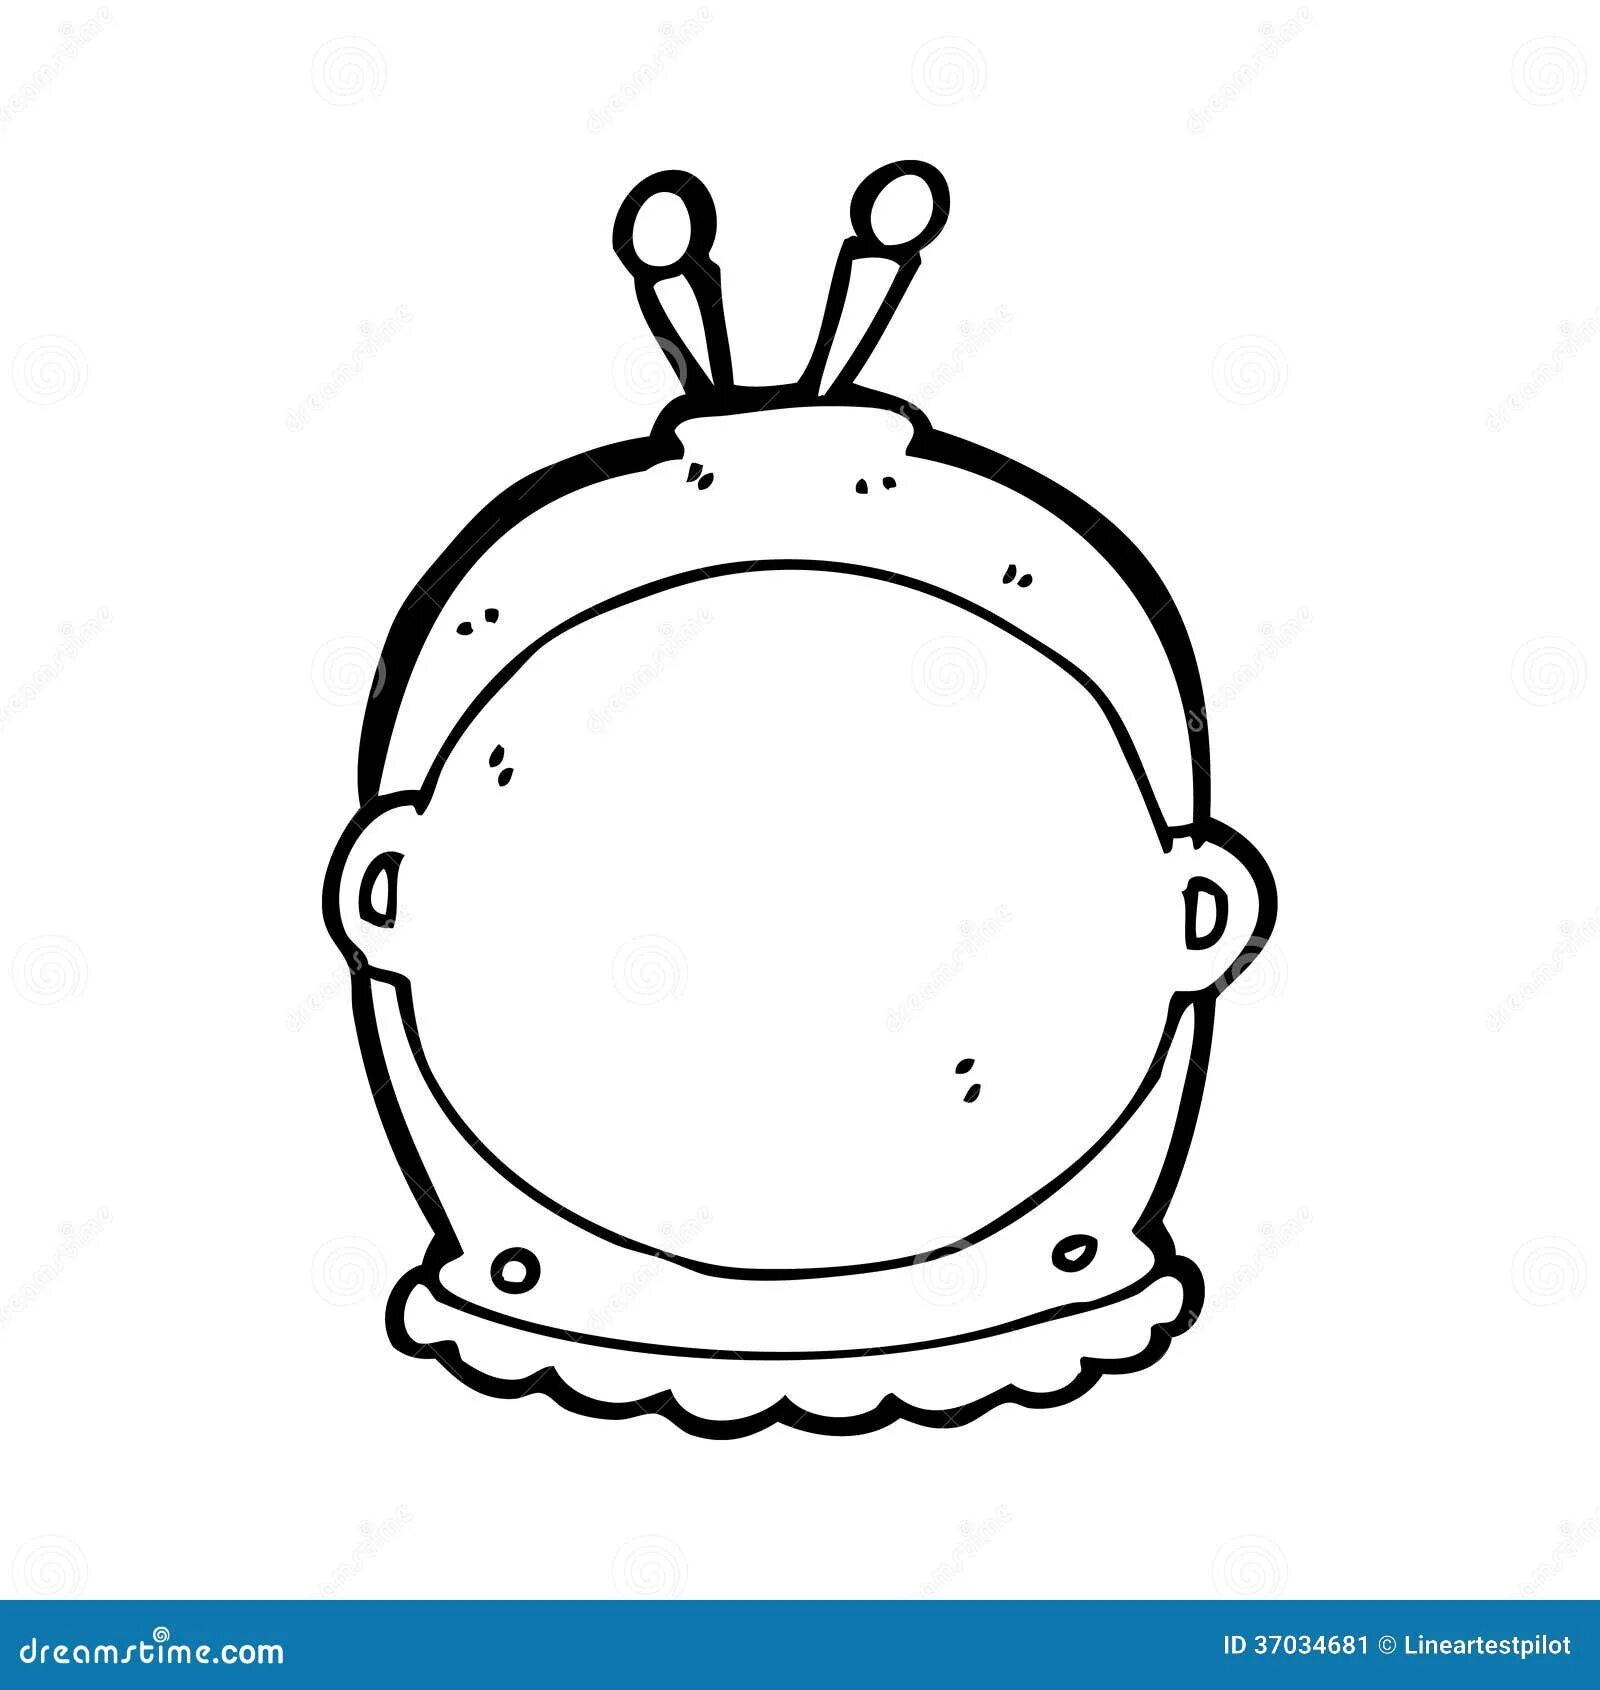 Шаблон шлема космонавта для фотосессии. Шлем Космонавта. Шлем Космонавта трафарет. Шлем Космонавта детский. Космический шлем для ребенка - макет.